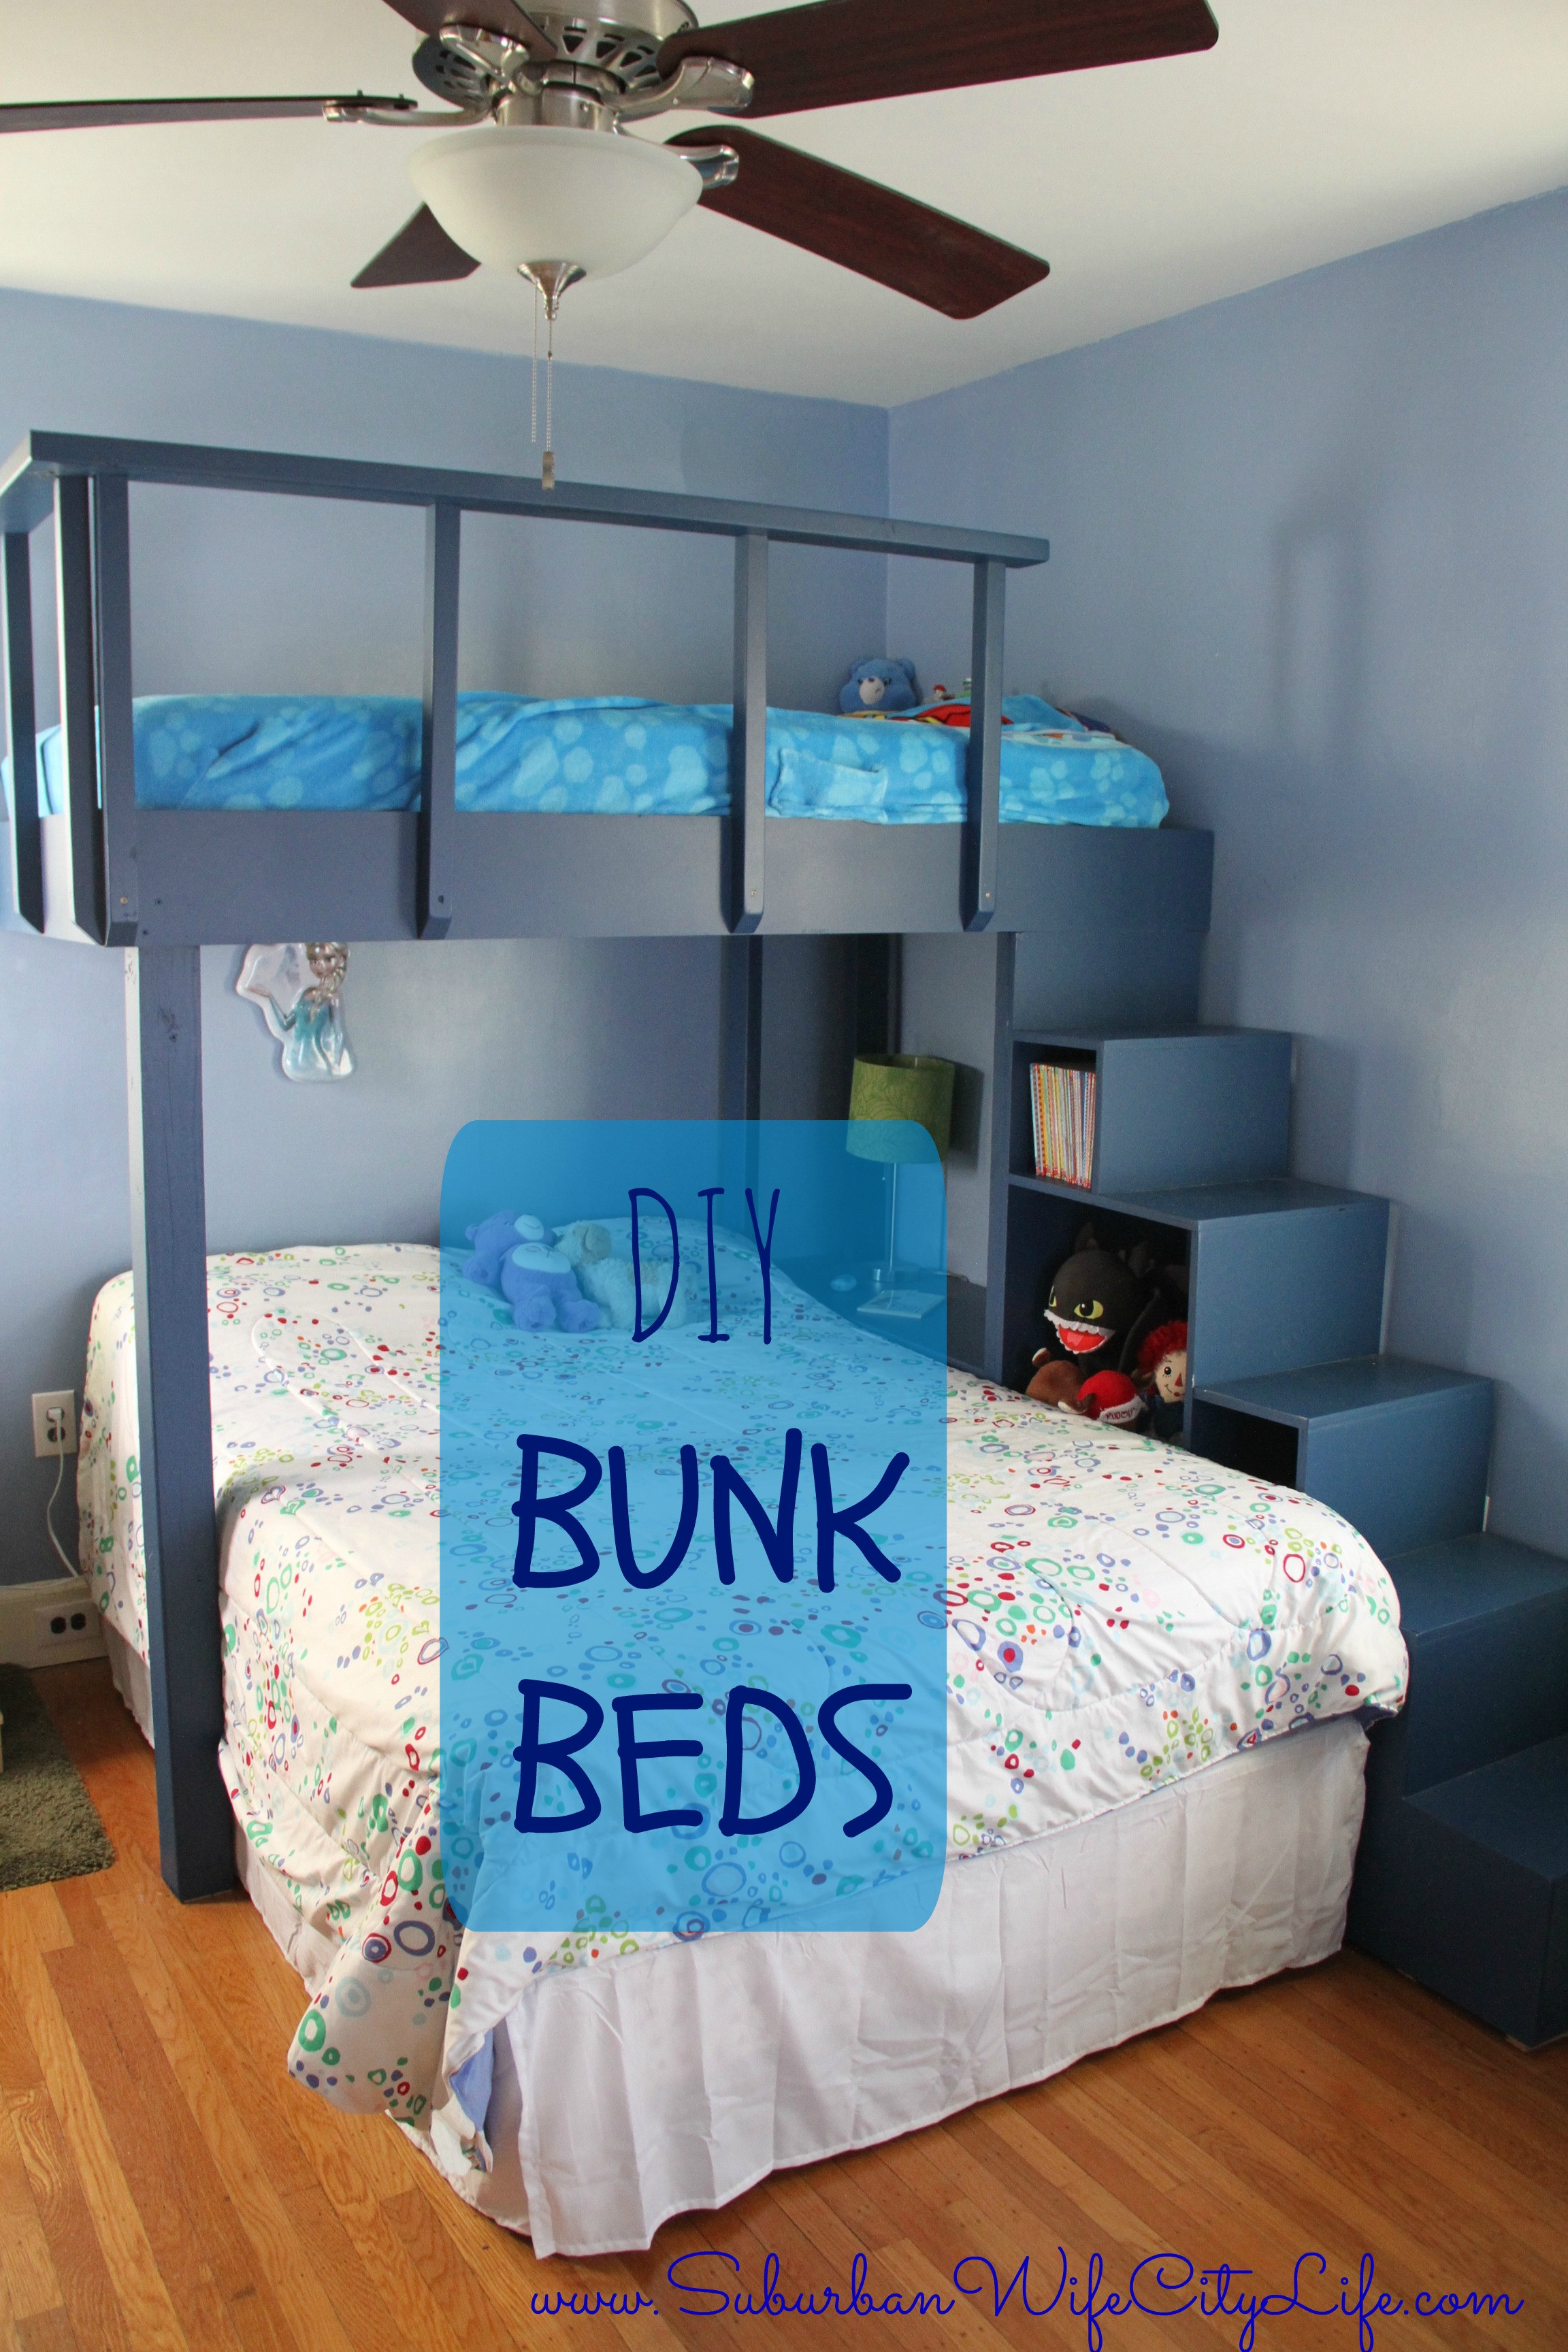 DIY Toddler Bunk Bed
 DIY Bunk Beds Suburban Wife City Life